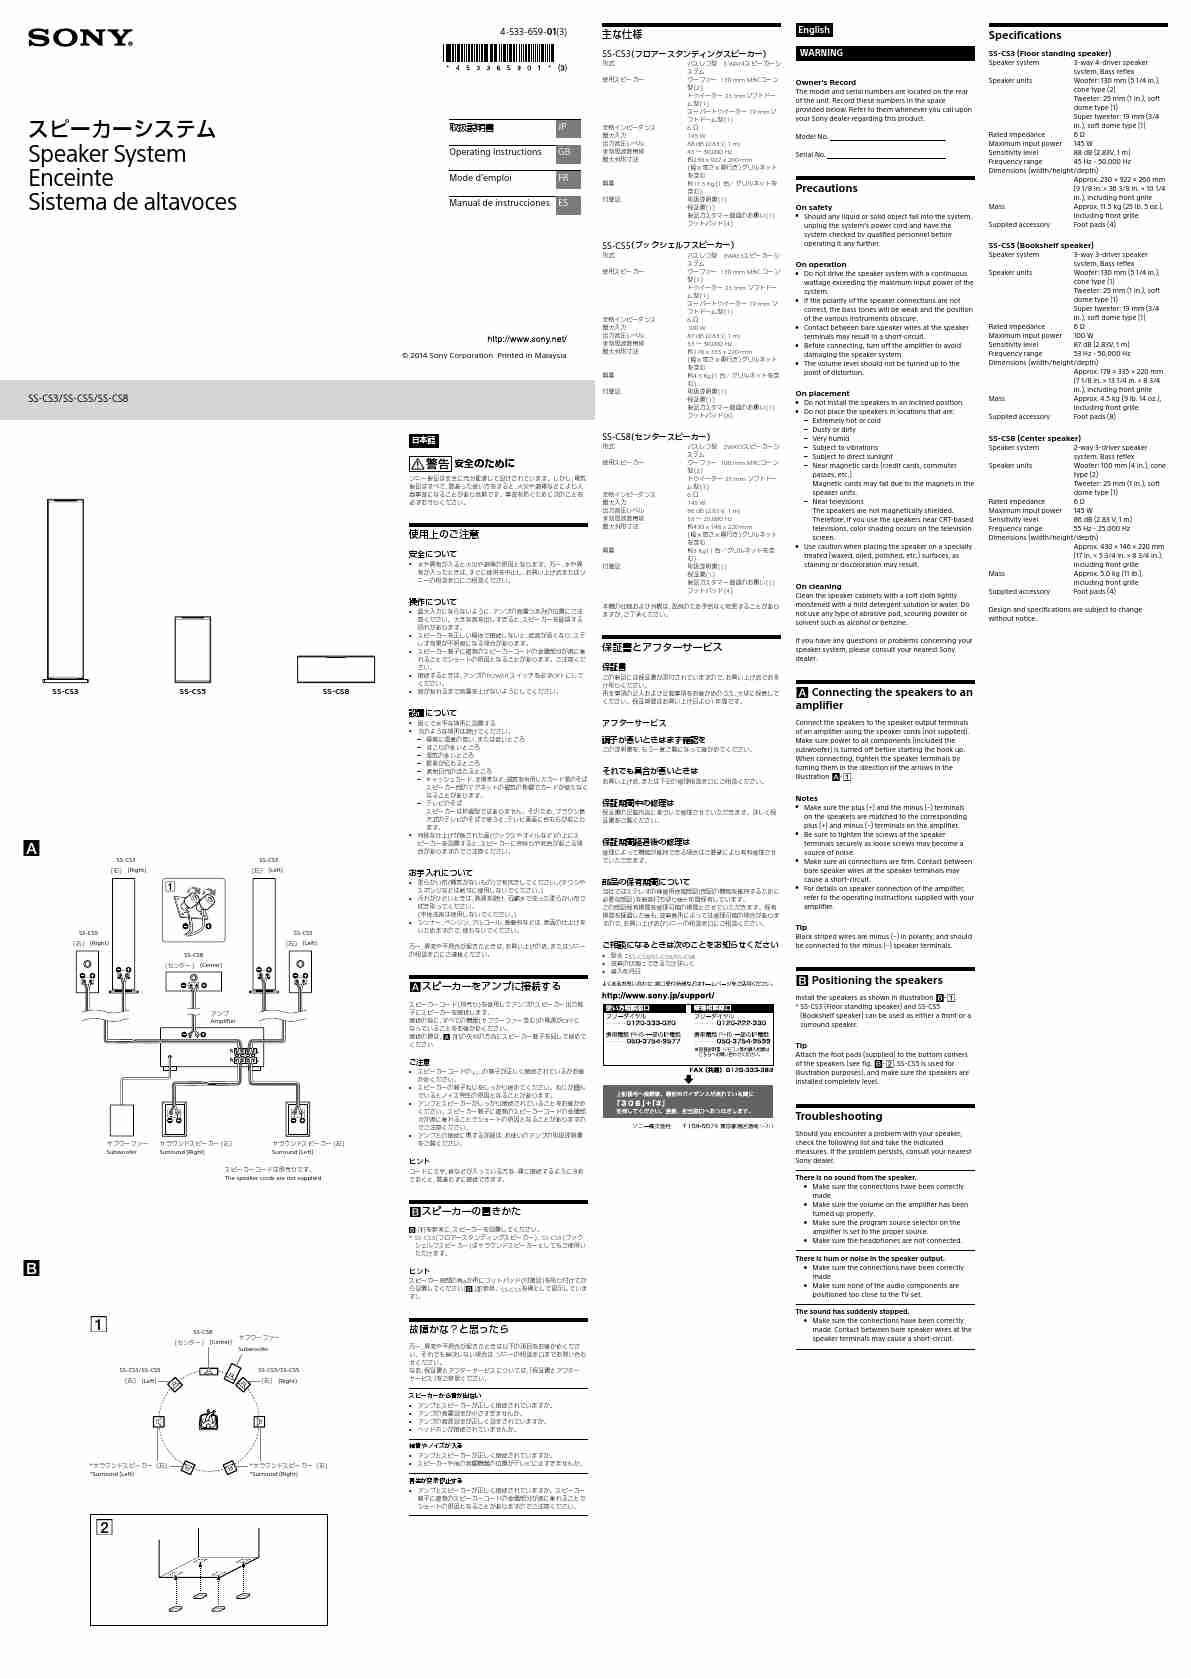 SONY SS-CS8-page_pdf